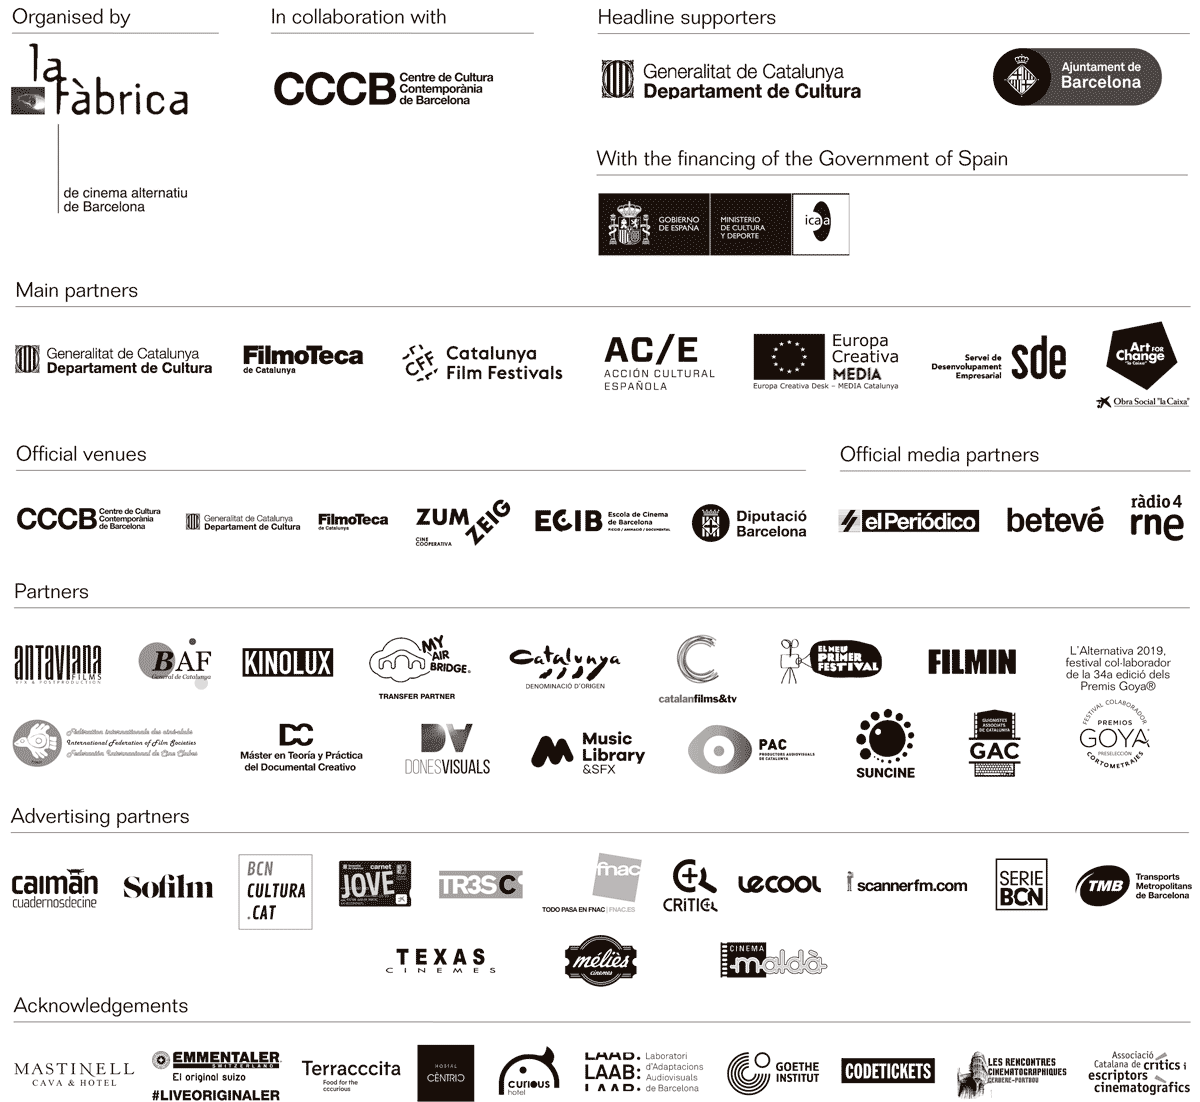 L'Alternativa 2019 - Sponsors